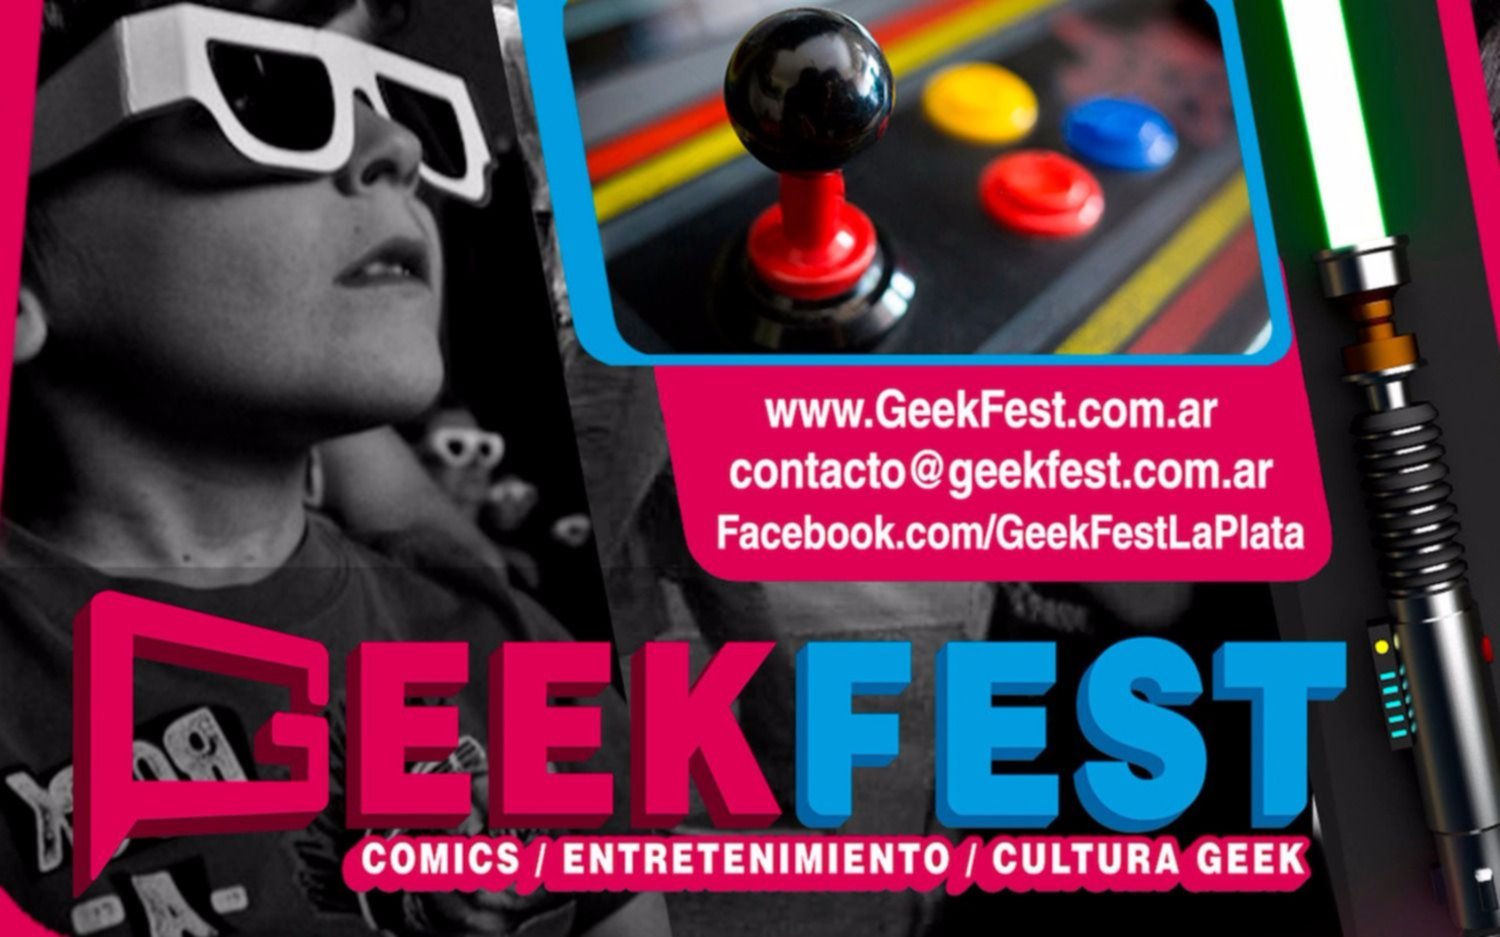 Ya llega la "Geek Fest", la primera feria de tecnología, cine, entretenimiento y cómics